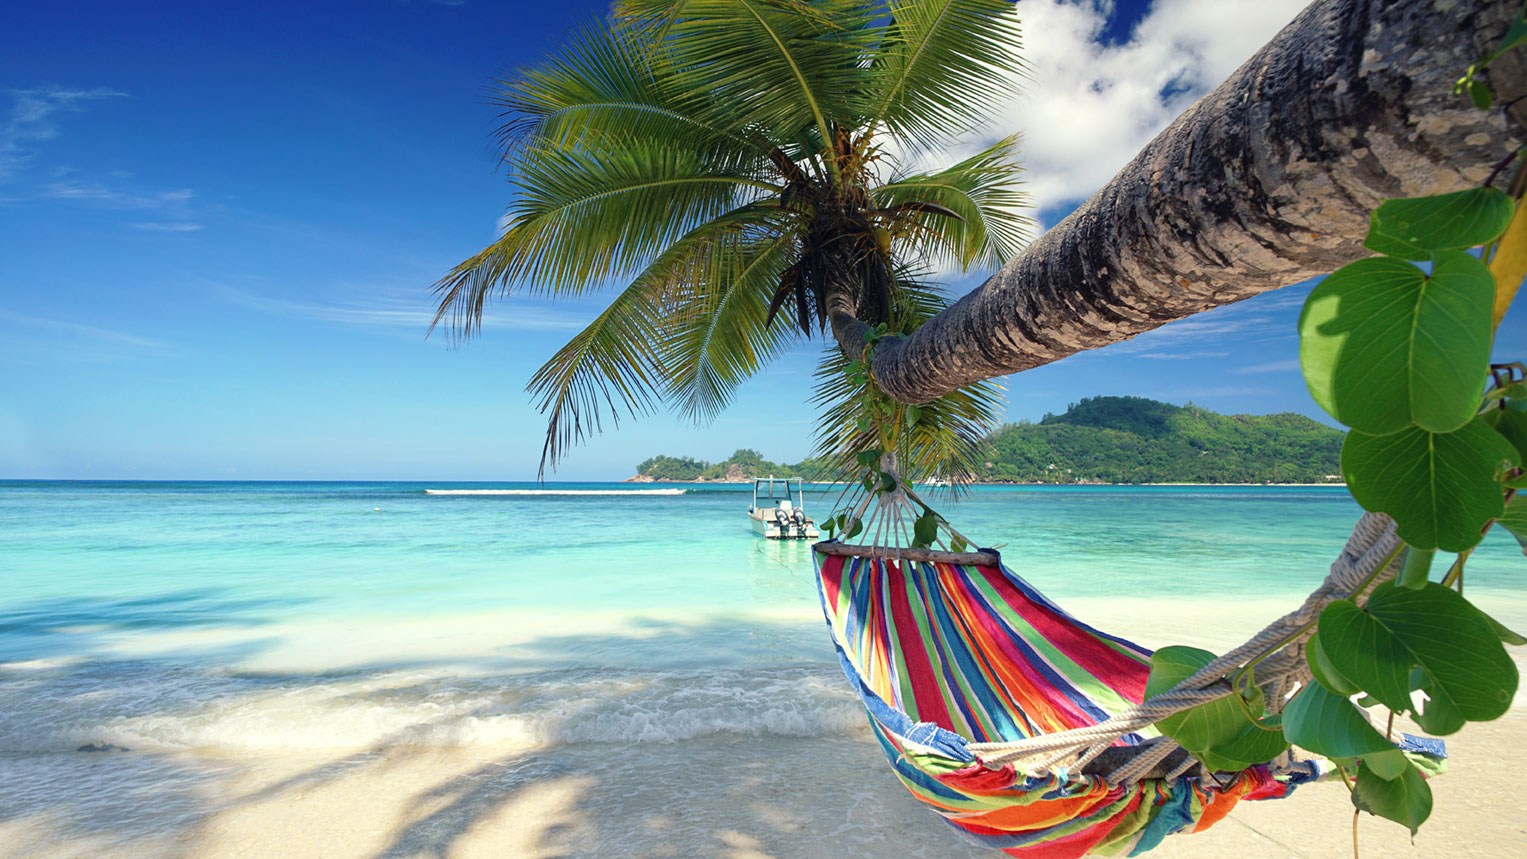 Eine Hängematte ist am Strand an einer Palme befestigt.